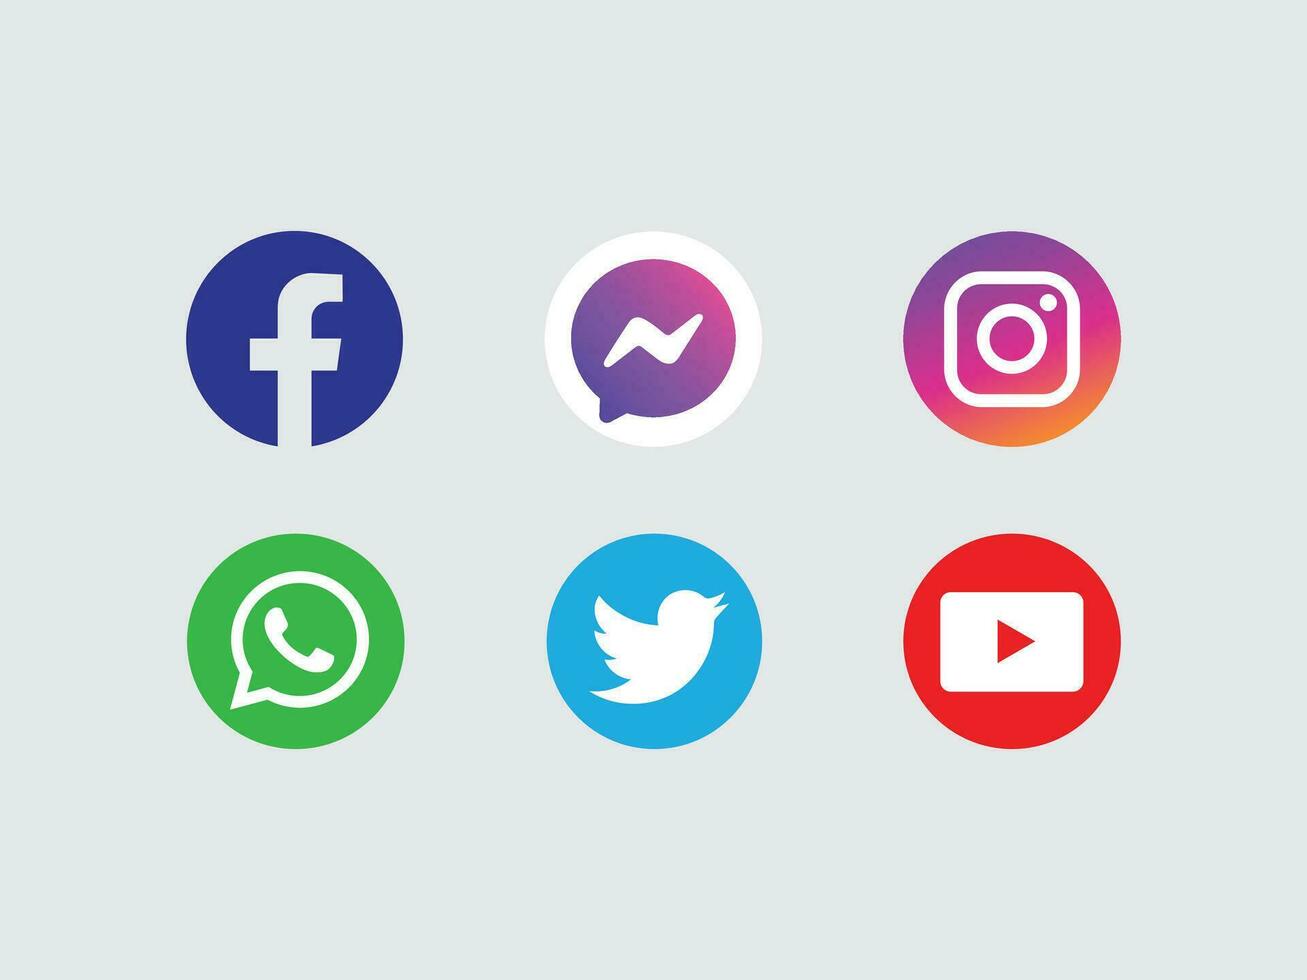 social media icon vector